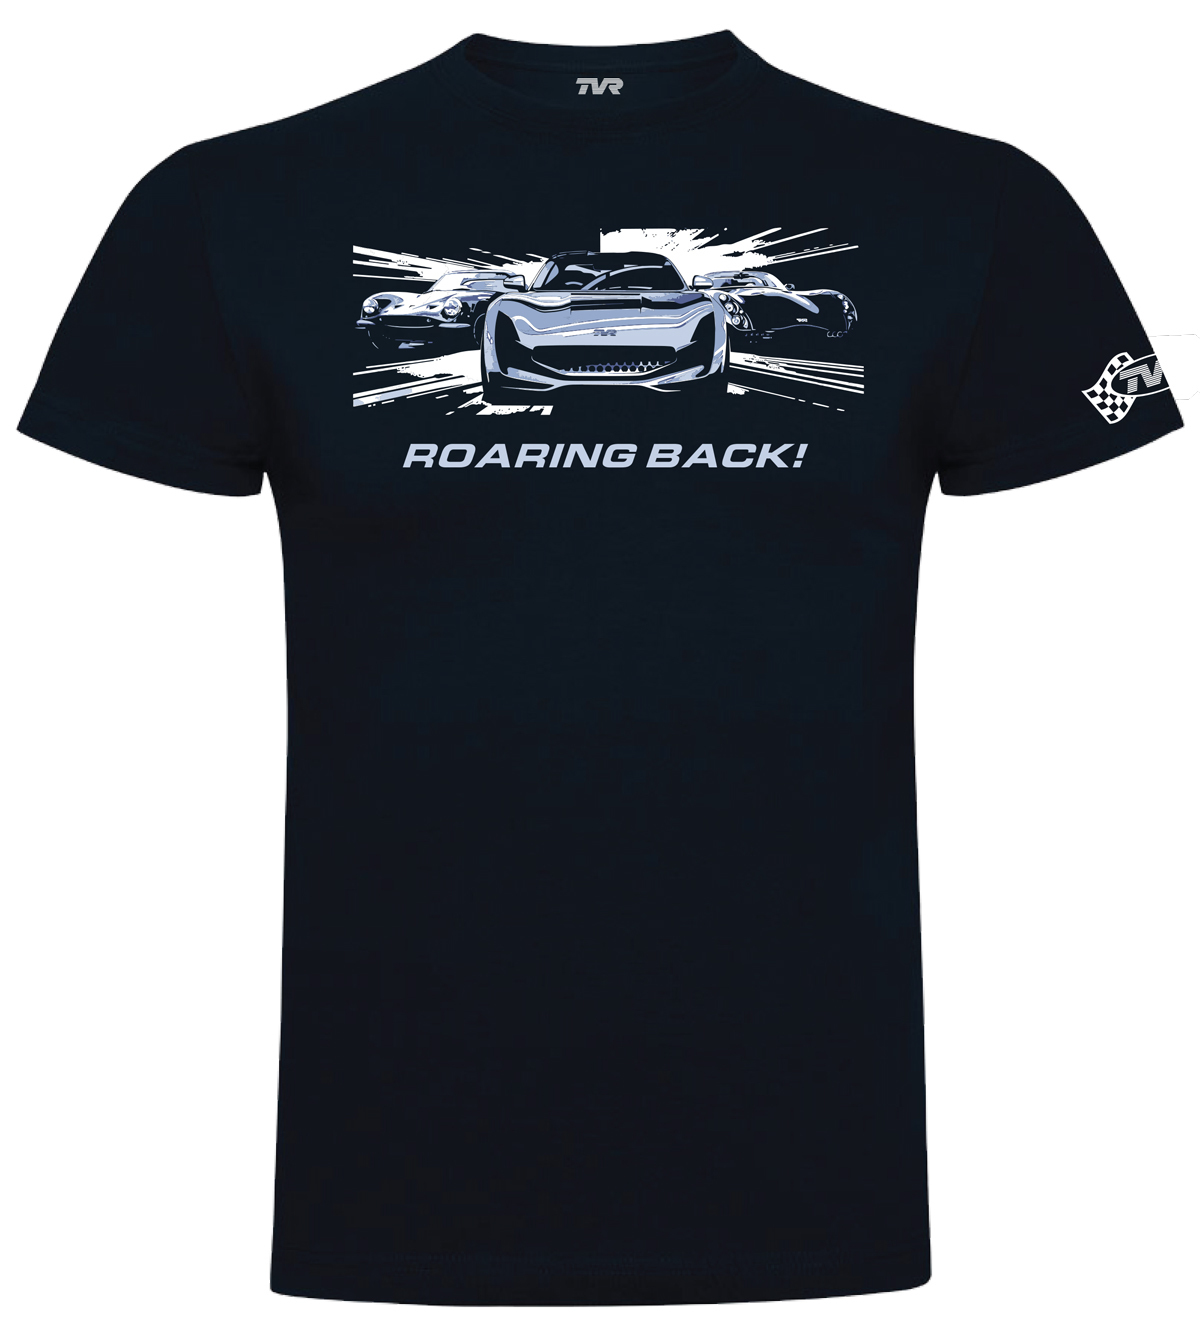 TVR 3 Cars “Roaring Back” T-Shirt NAVY - Medium